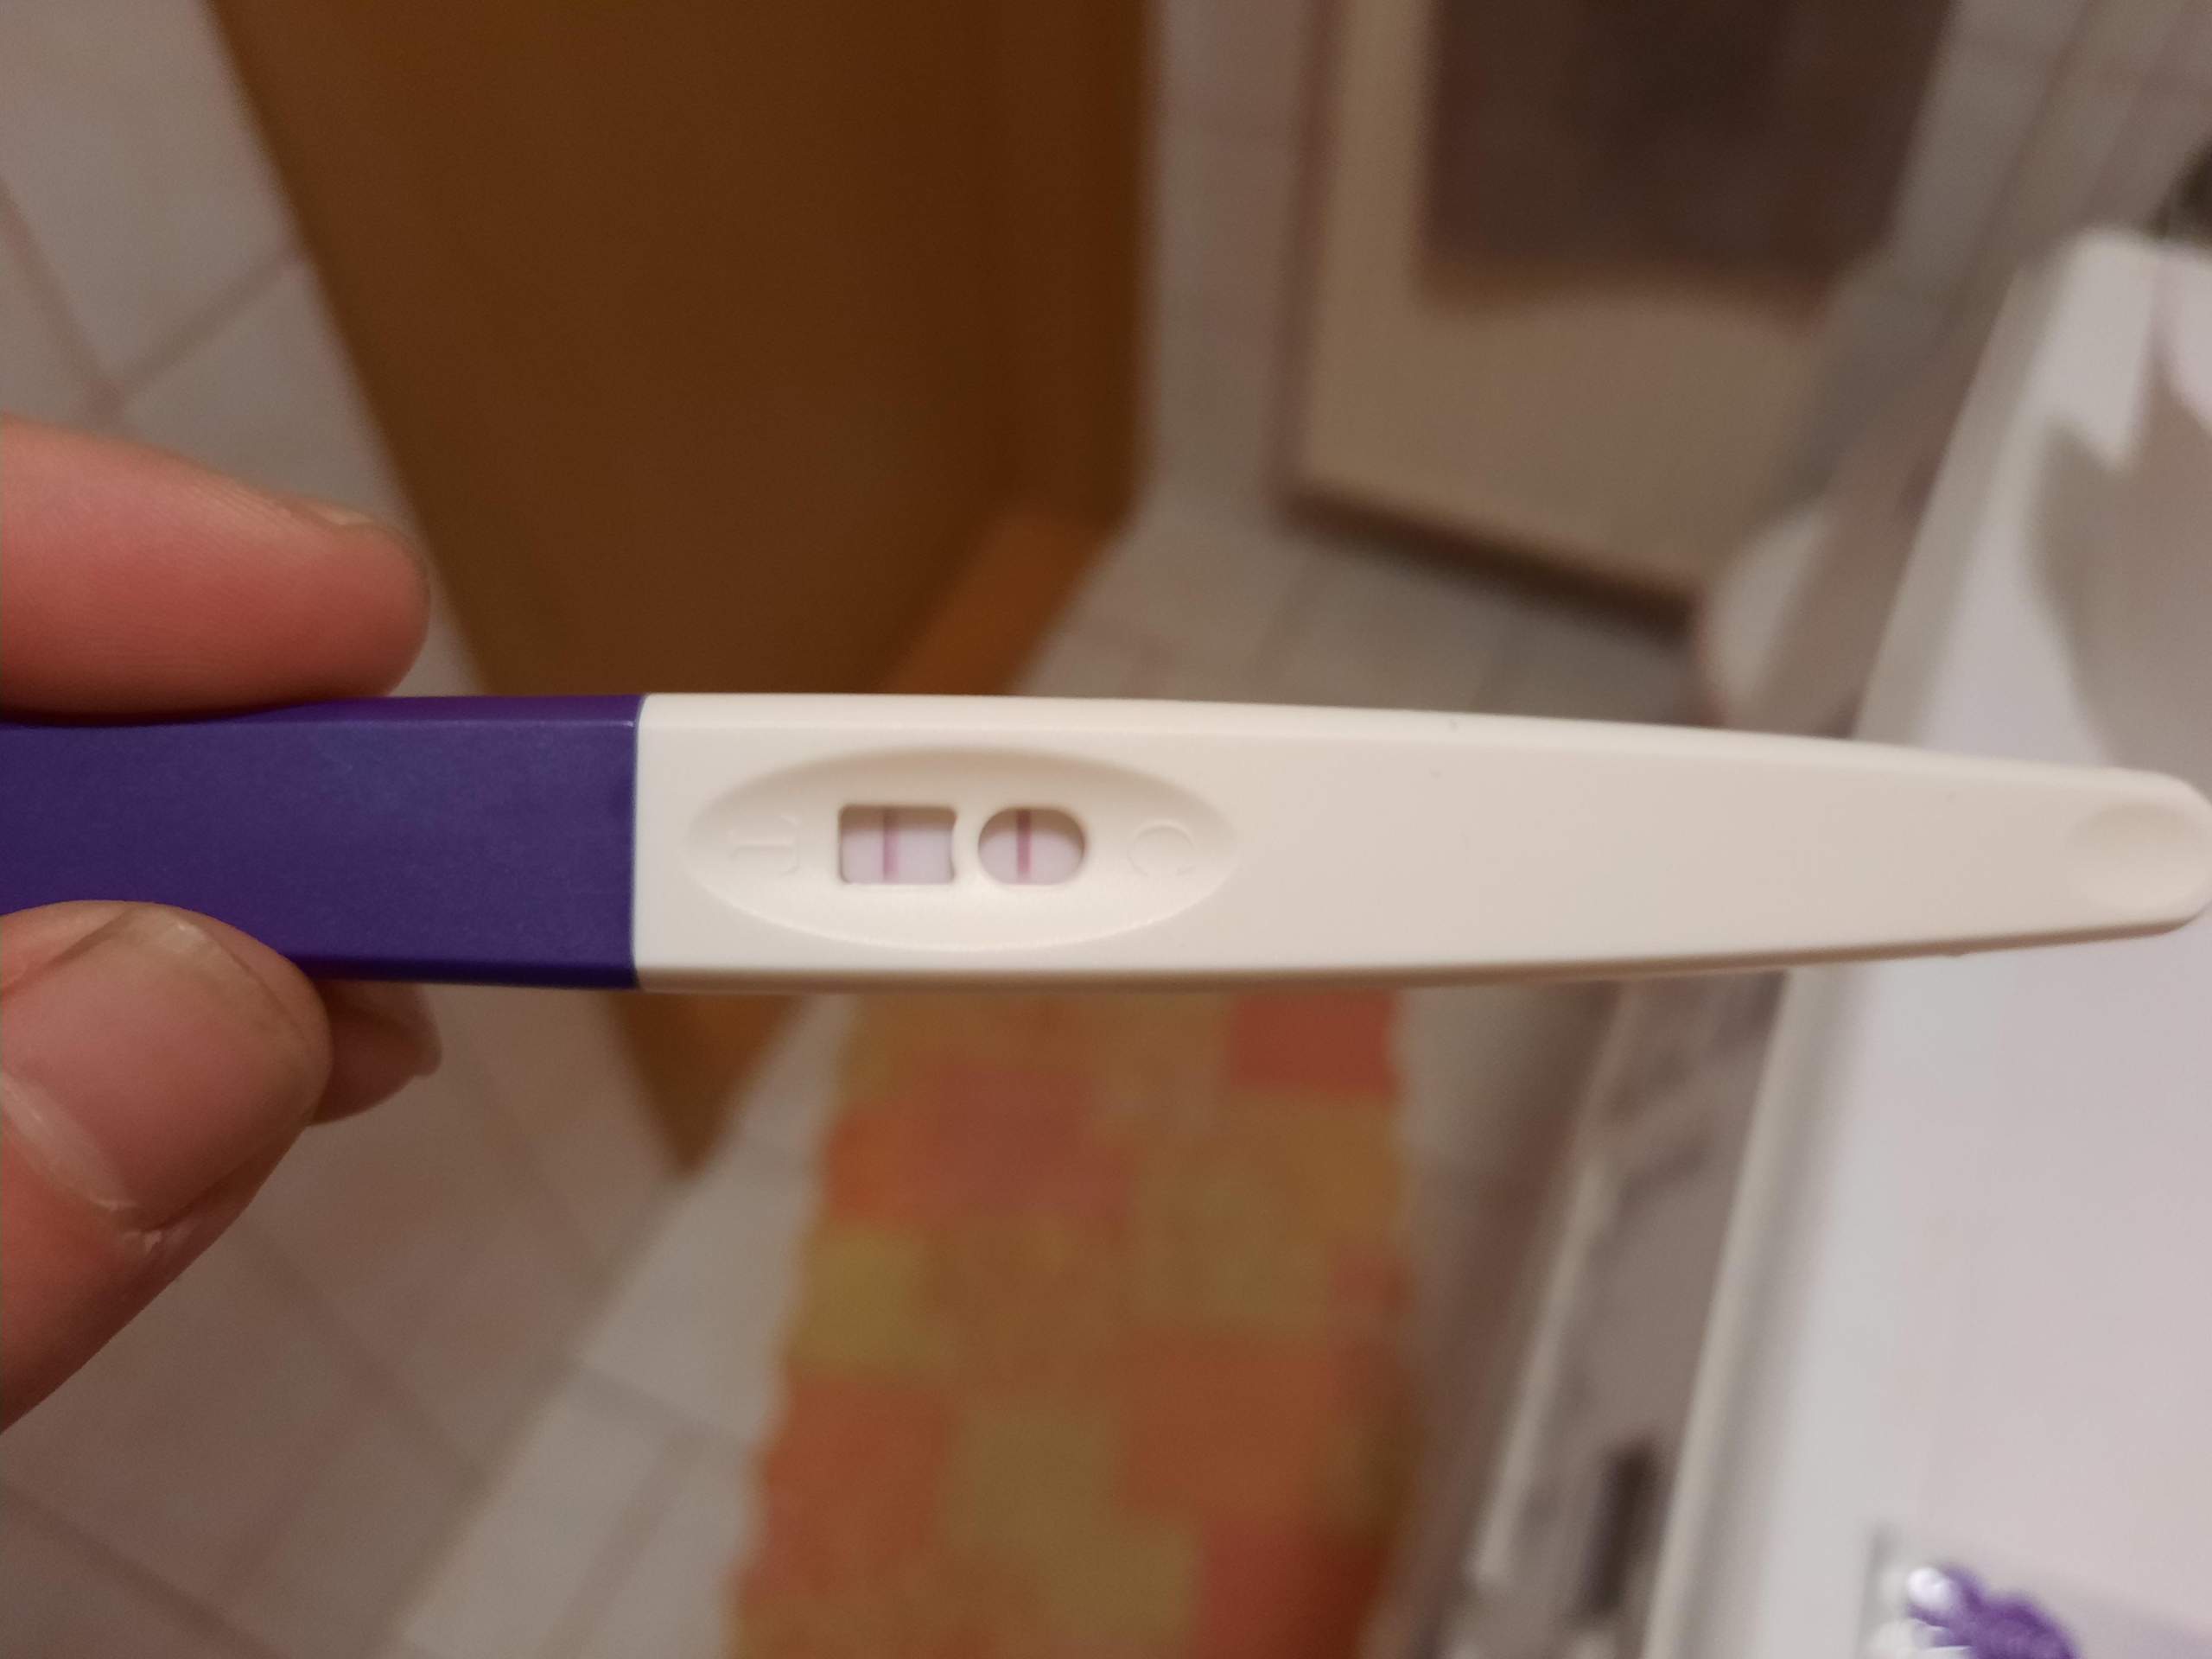 Wann sollte man sex haben wenn der ovulationstest positiv ist